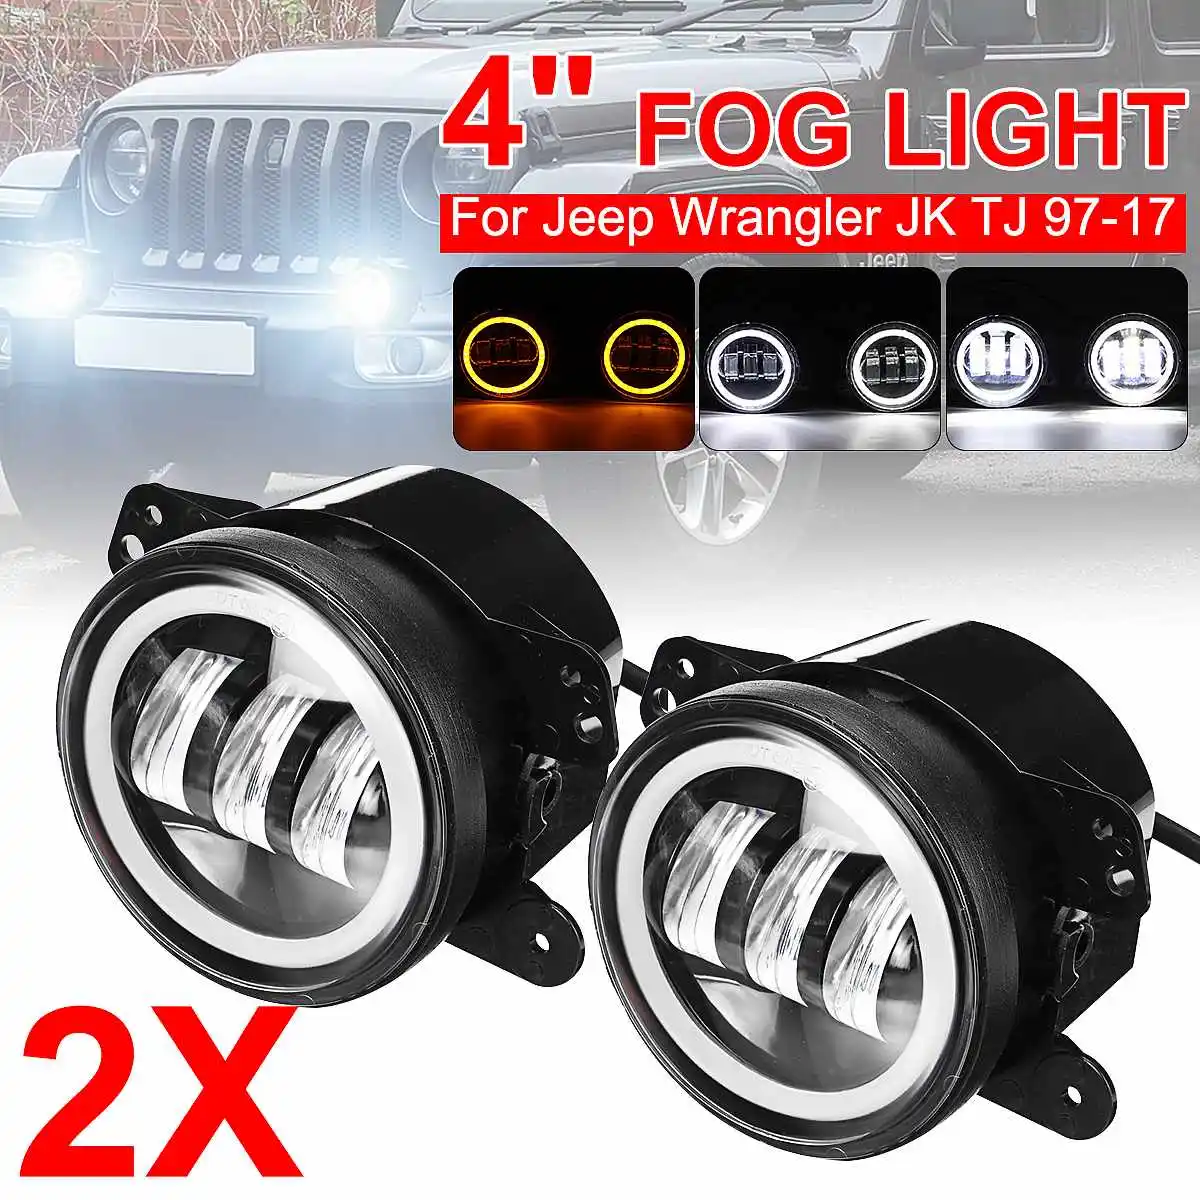 2PCS 4" Inch 30W Round LED Fog Lights Driving Lamps Turn Signal Light IP65 For Dodge Chrysler Wrangler JK TJ DOT, SAE,E9